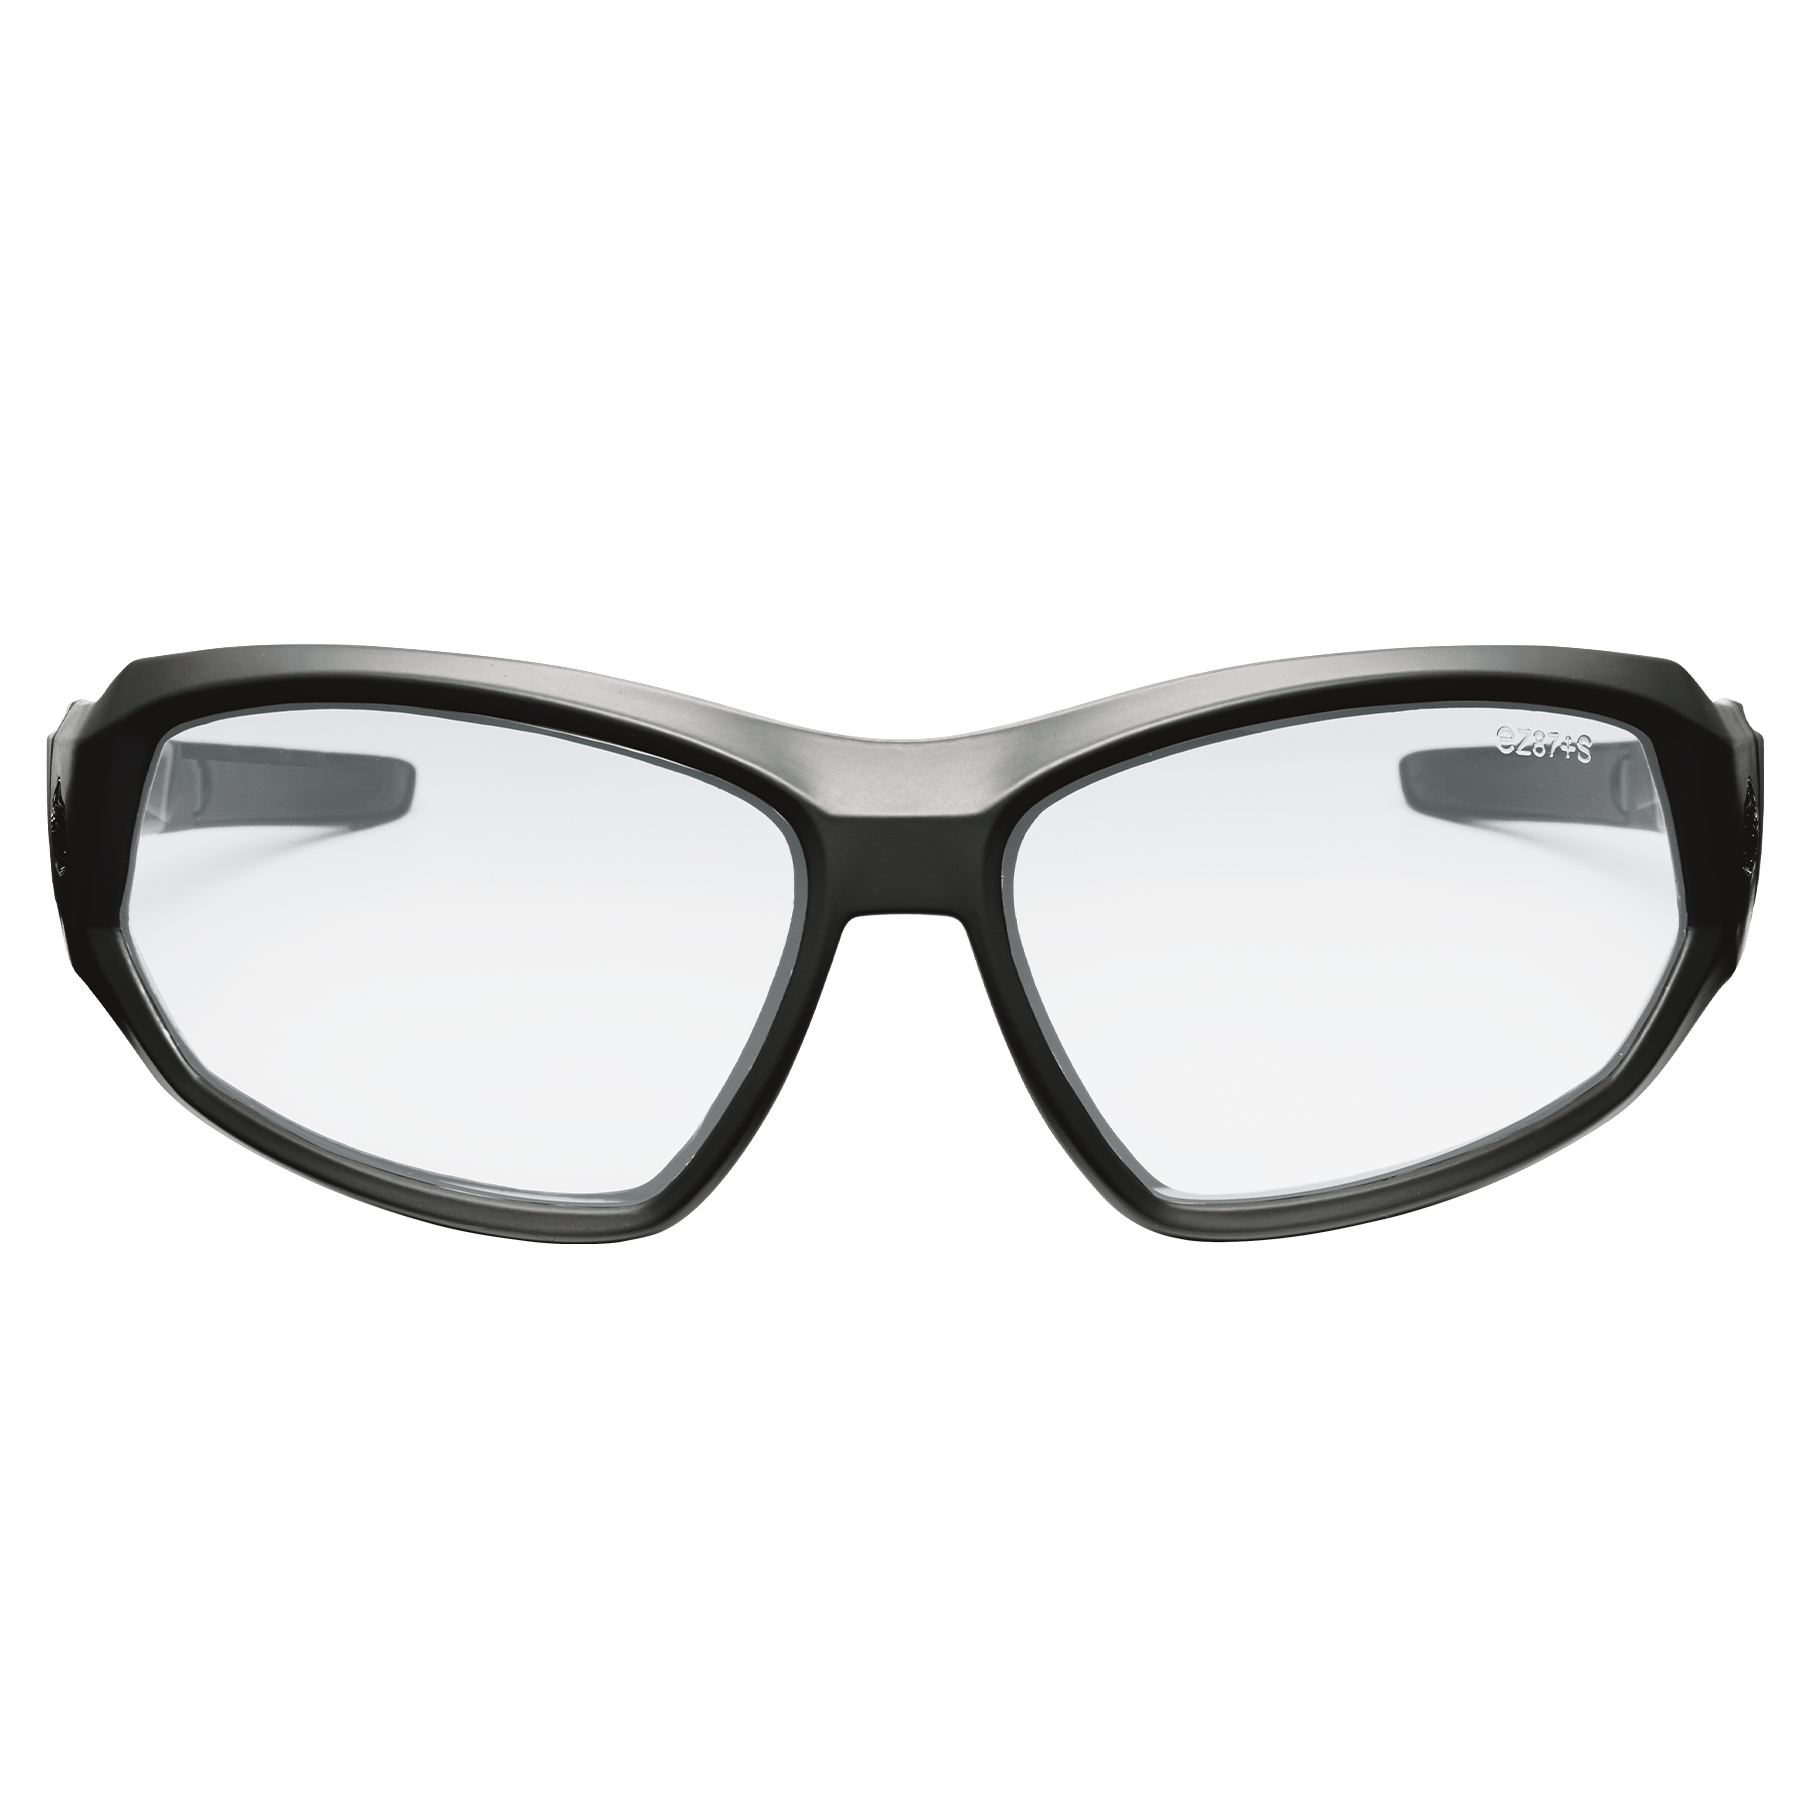 Loki Anti-Fog Safety Glasses, Scratch Resistant Glasses | Ergodyne